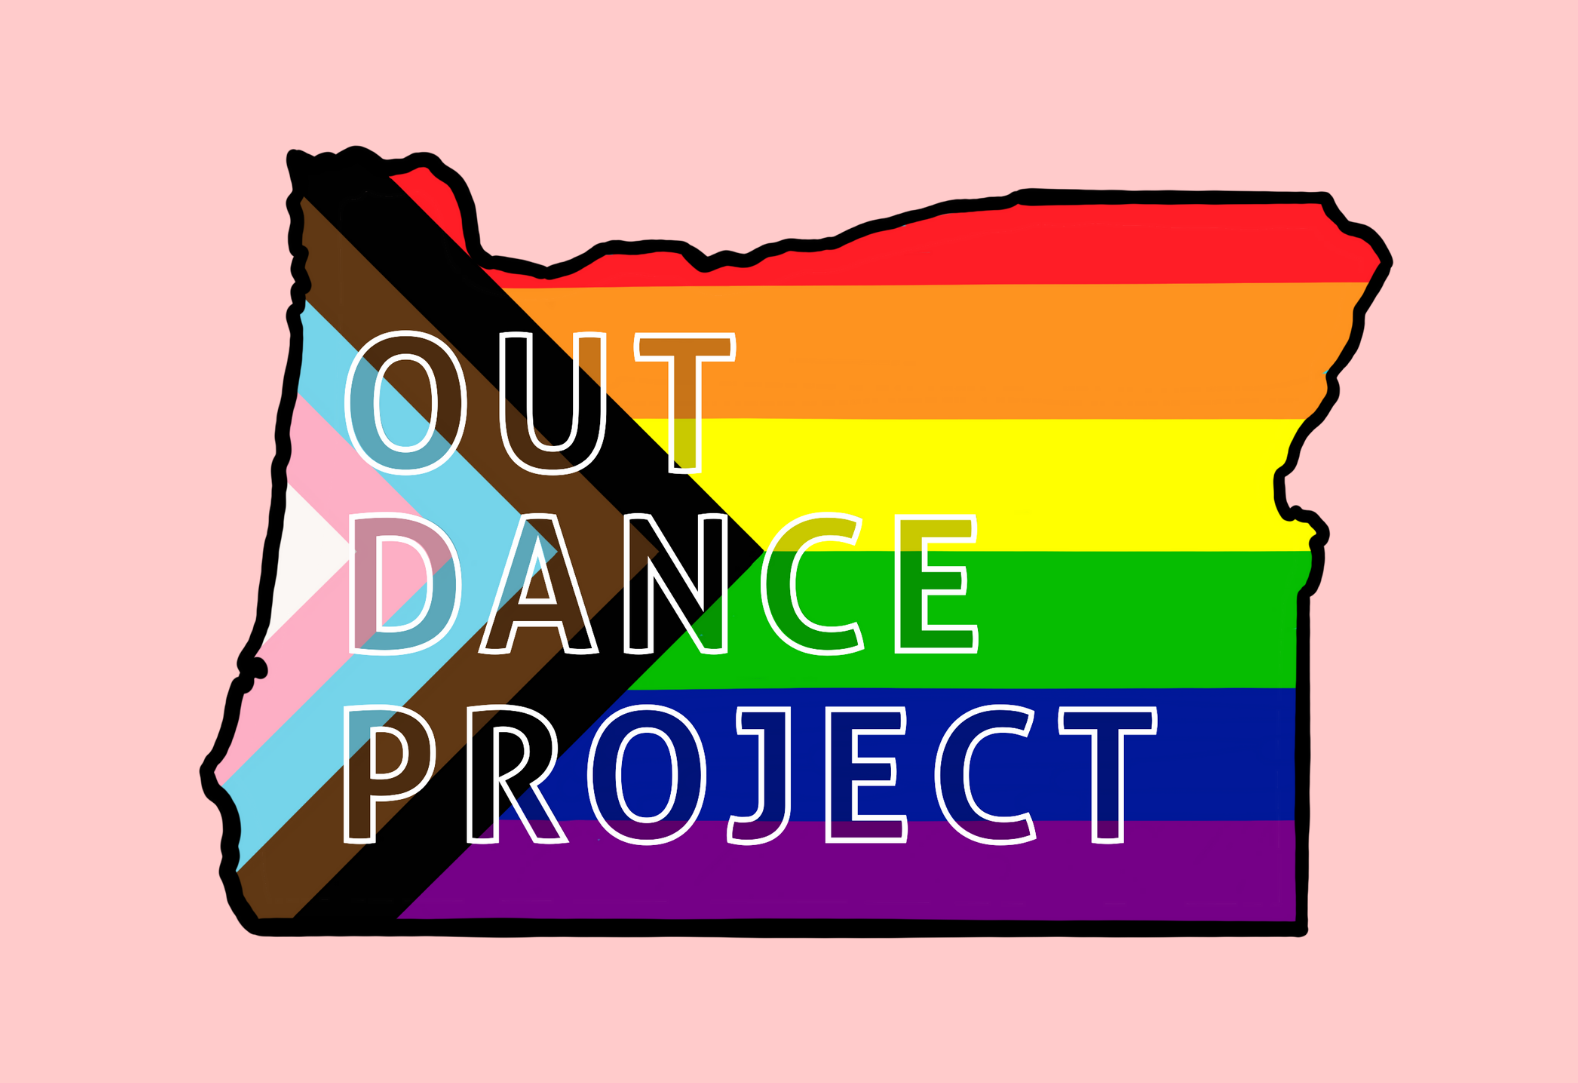 오레곤 모양의 아웃 댄스 프로젝트 로고와 프라이드 플래그 색상